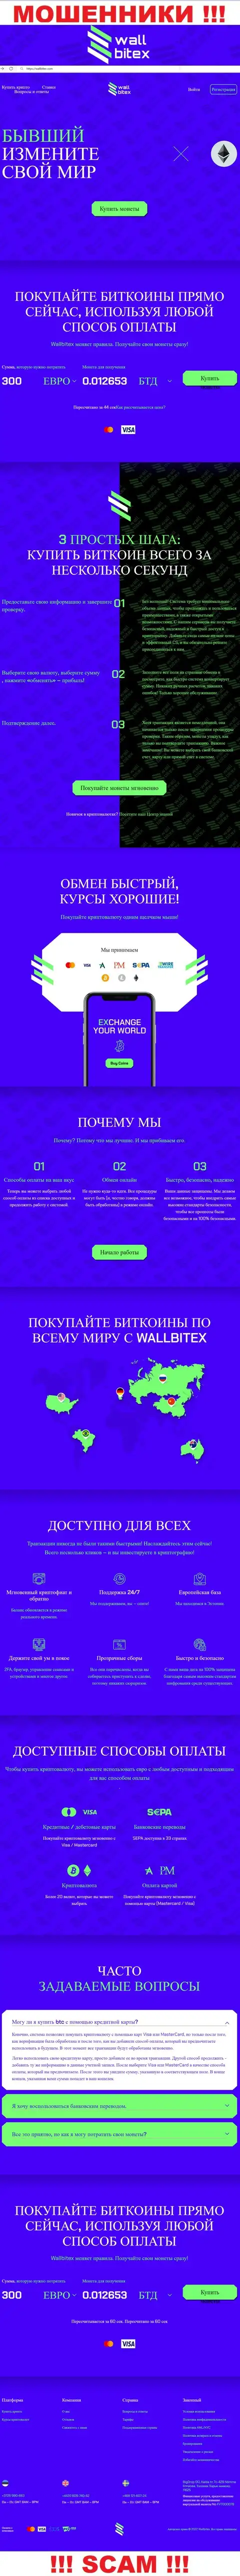 WallBitex Com - это официальный интернет-портал противозаконно действующей конторы Wall Bitex